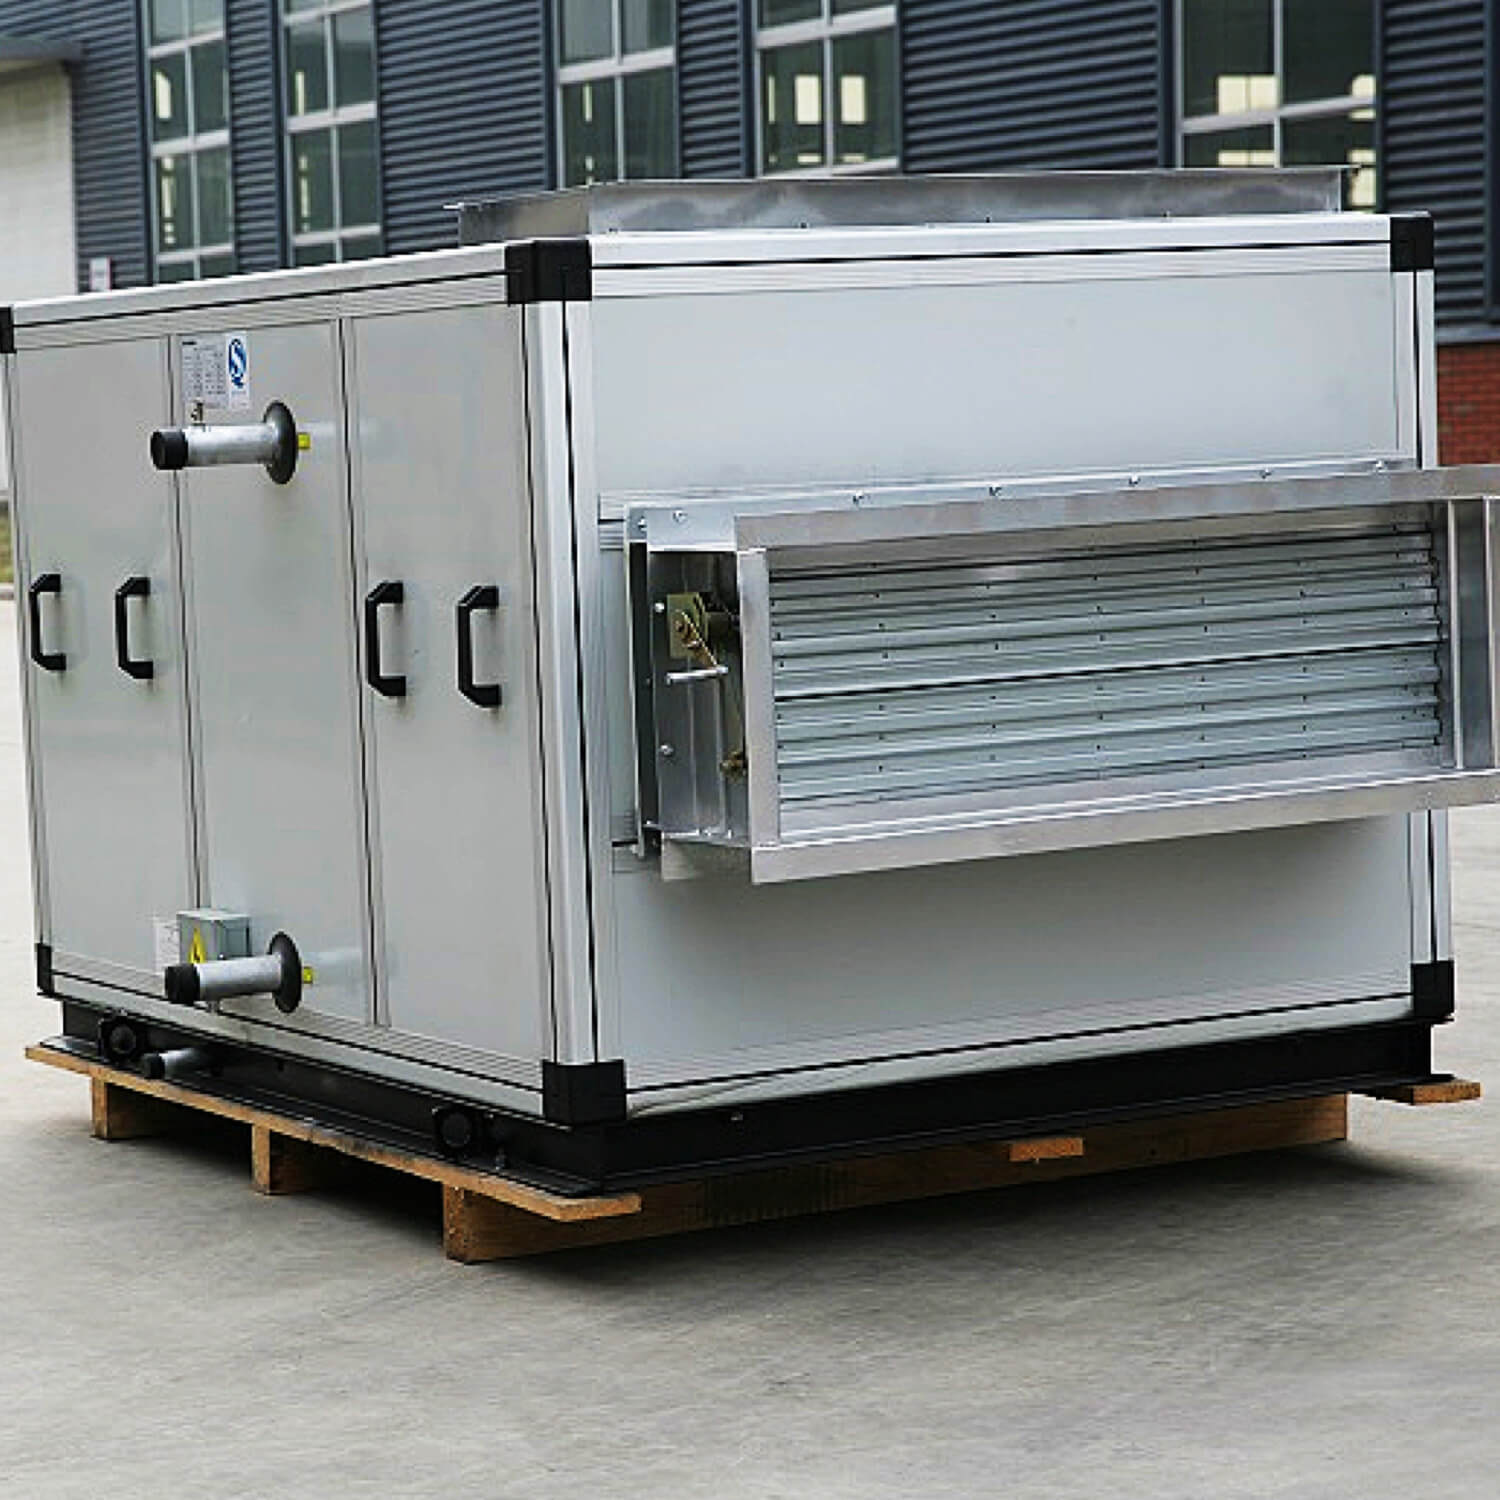 Fabricación de sistemas HVAC Unidad de tratamiento de aire combinada